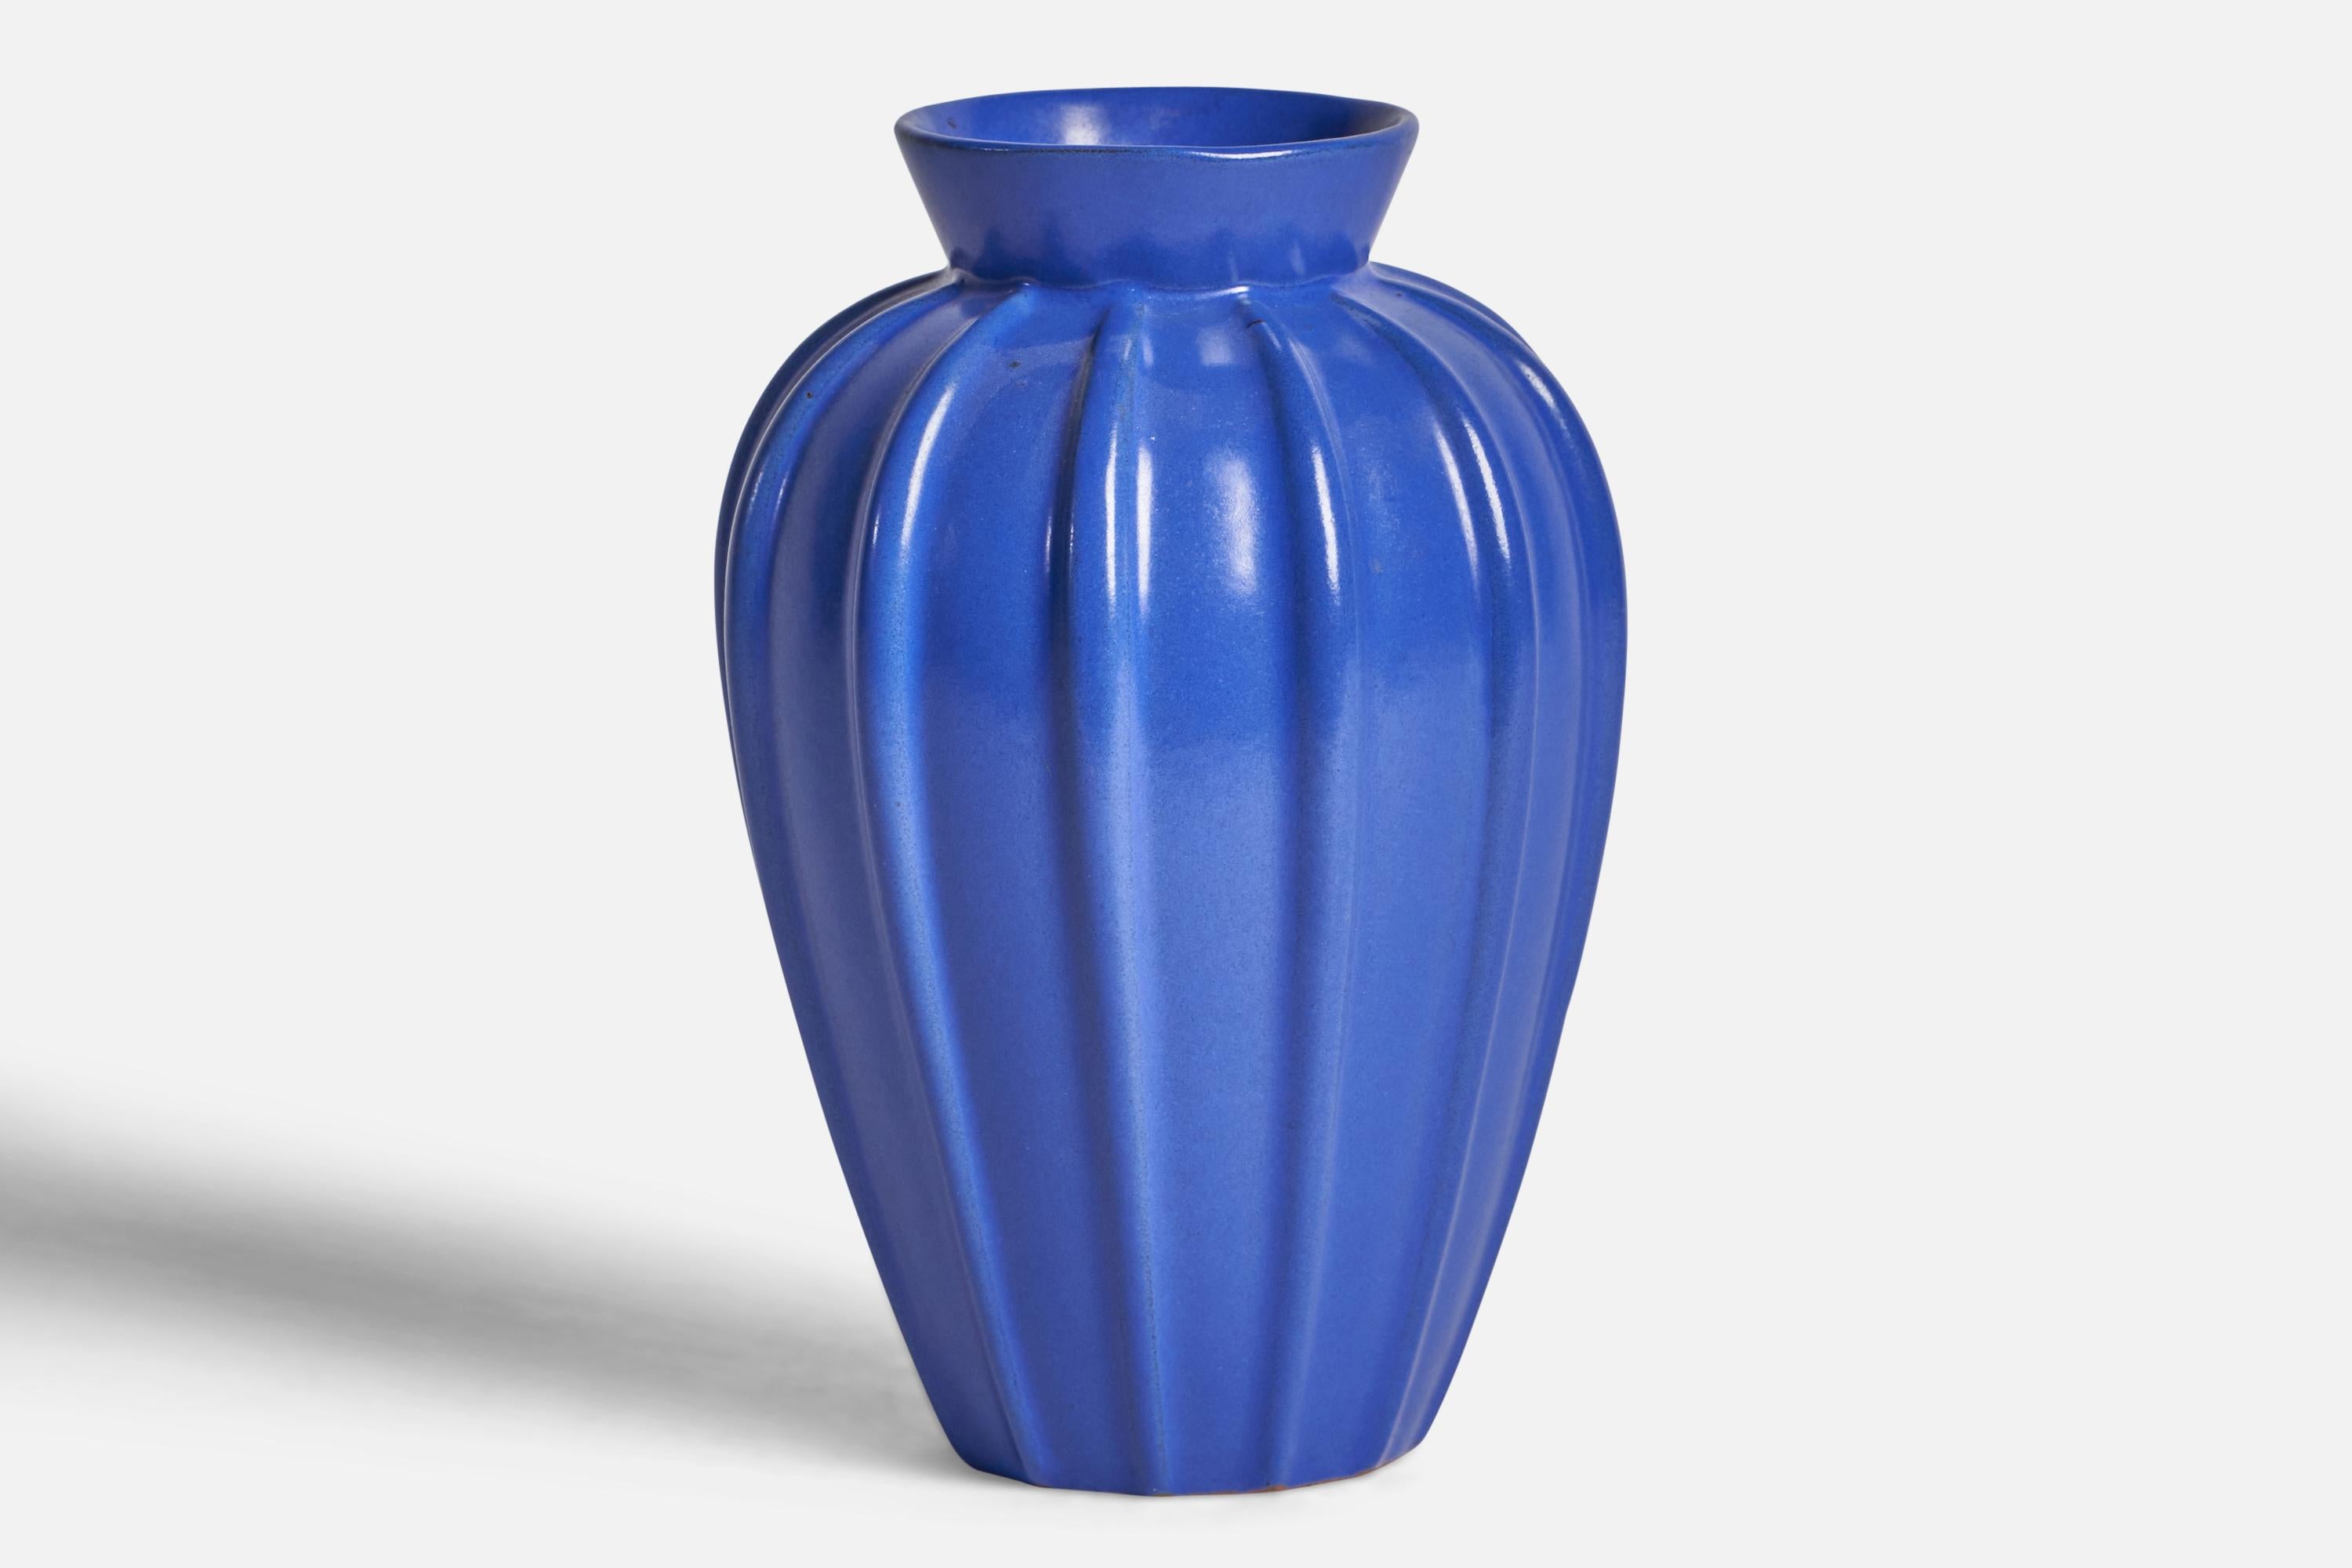 A blue-glazed fluted earthenware vase designed and produced by Upsala Ekeby, Sweden, 1930s.